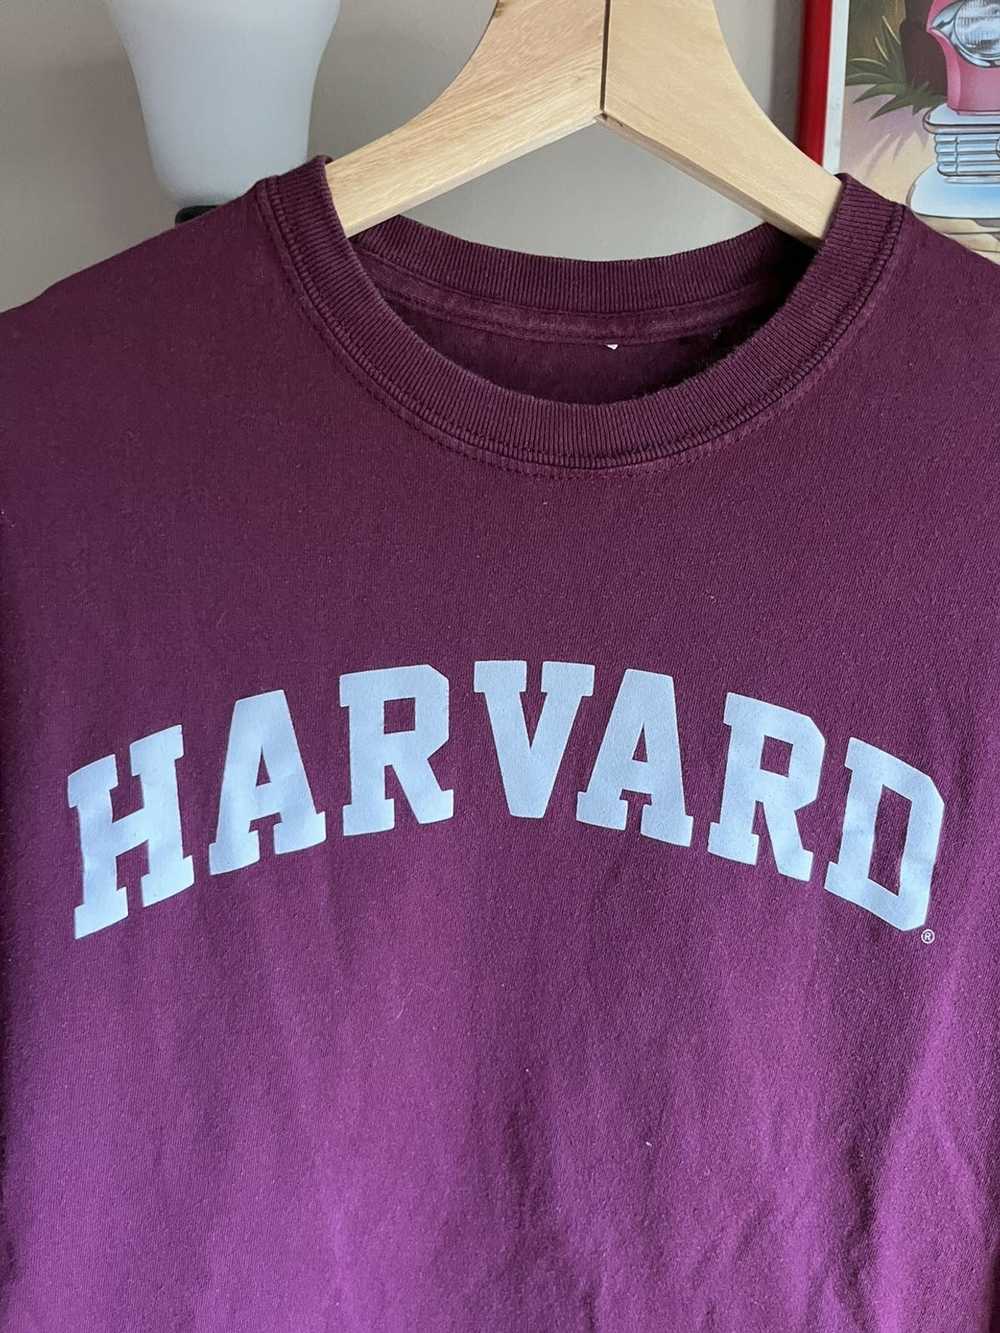 American College × Vintage Vintage Harvard Tshirt - image 2